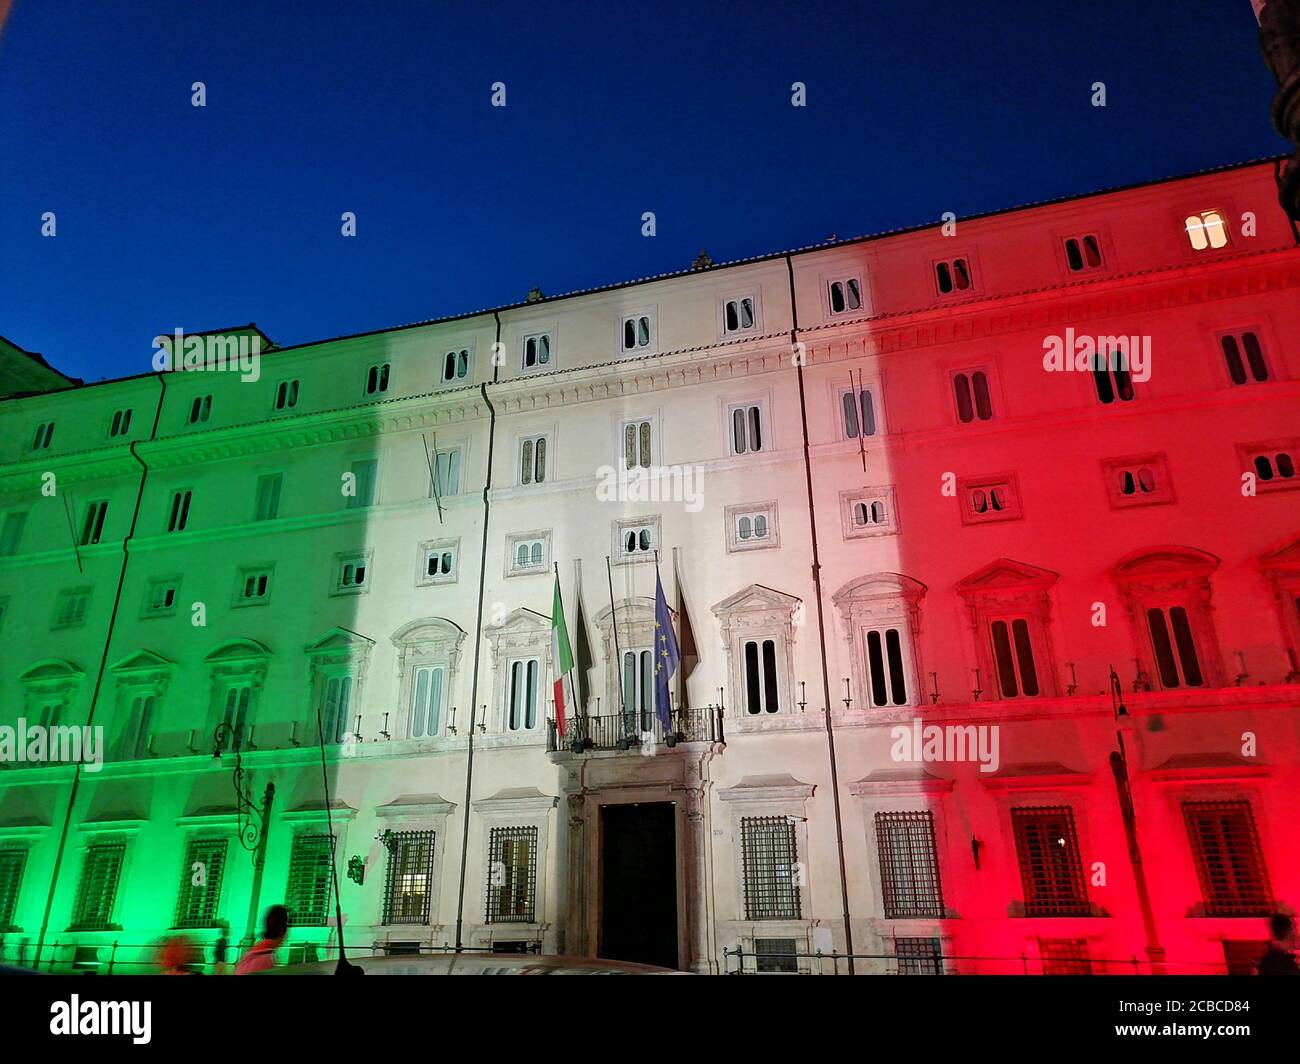 Roma, Italia - 12 agosto 2020:  Emergenza Coronavirus in Italia, Palazzo Chigi, sede del governo italiano, illuminata con i colori della bandiera italiana Stock Photo